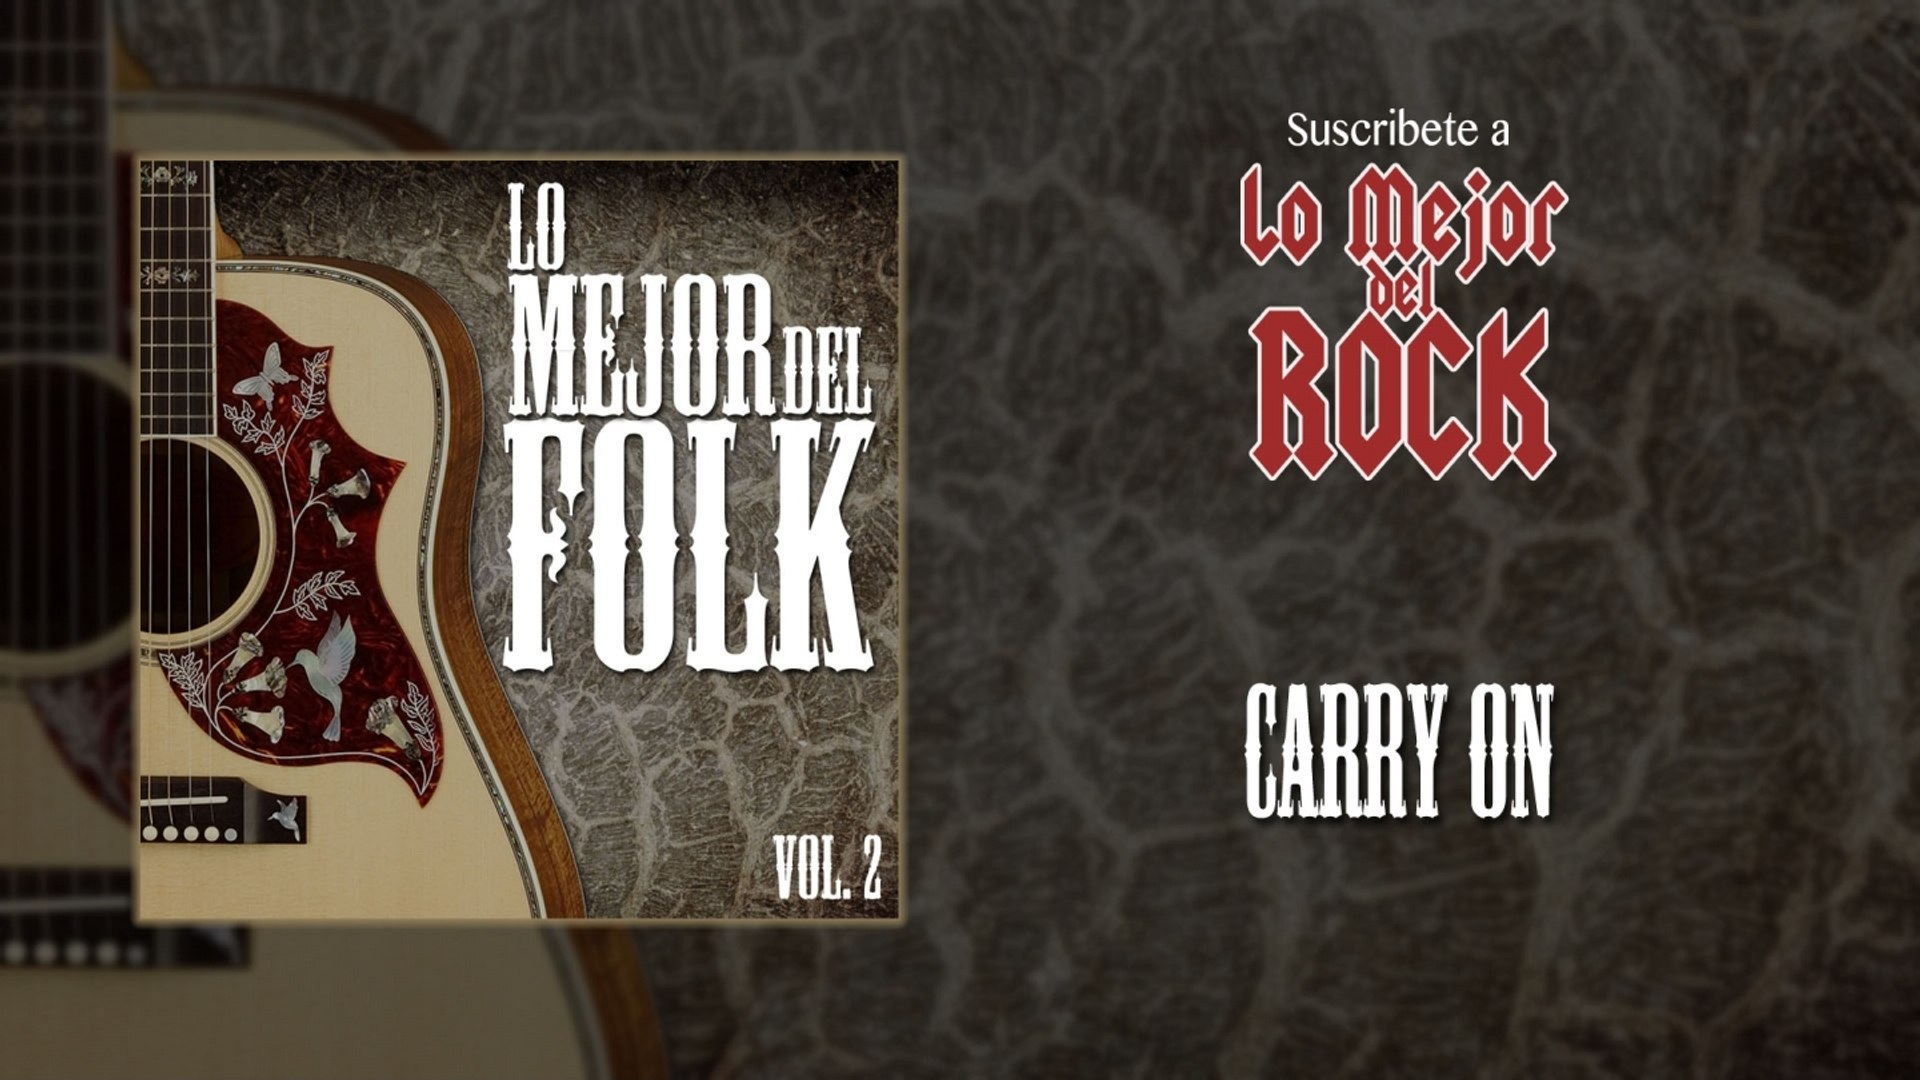 ⁣Lo Mejor del Folk - Vol. 2 - Carry On